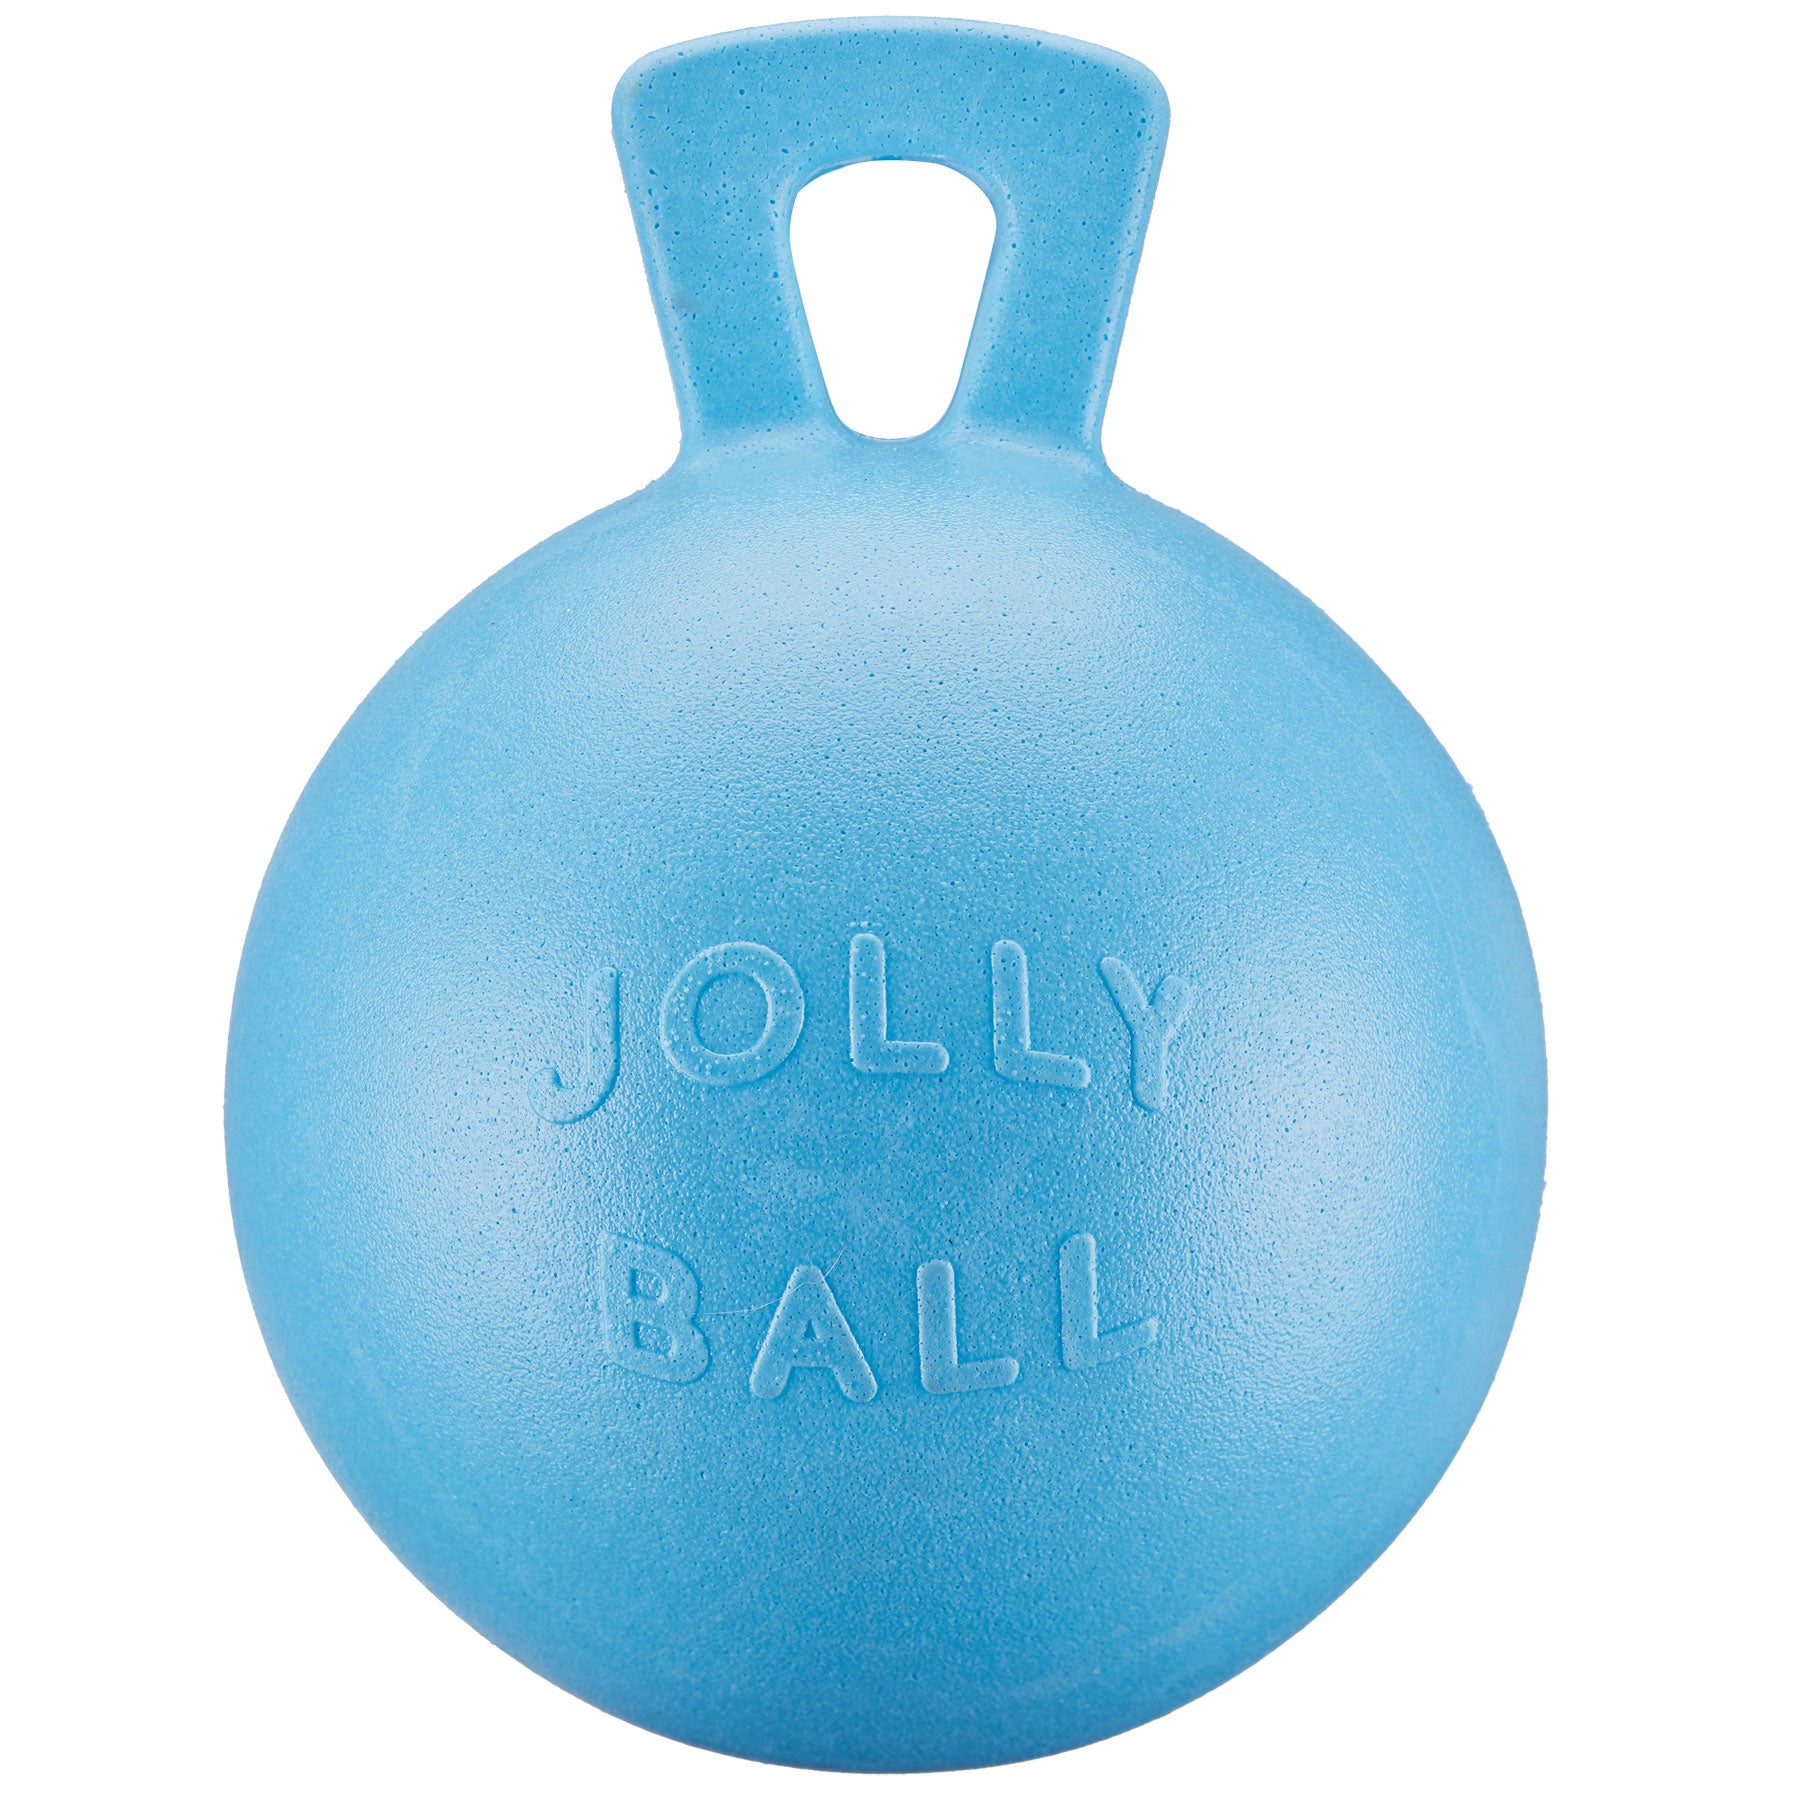 Horsemens 10 Jolly Ball Horse Toy 